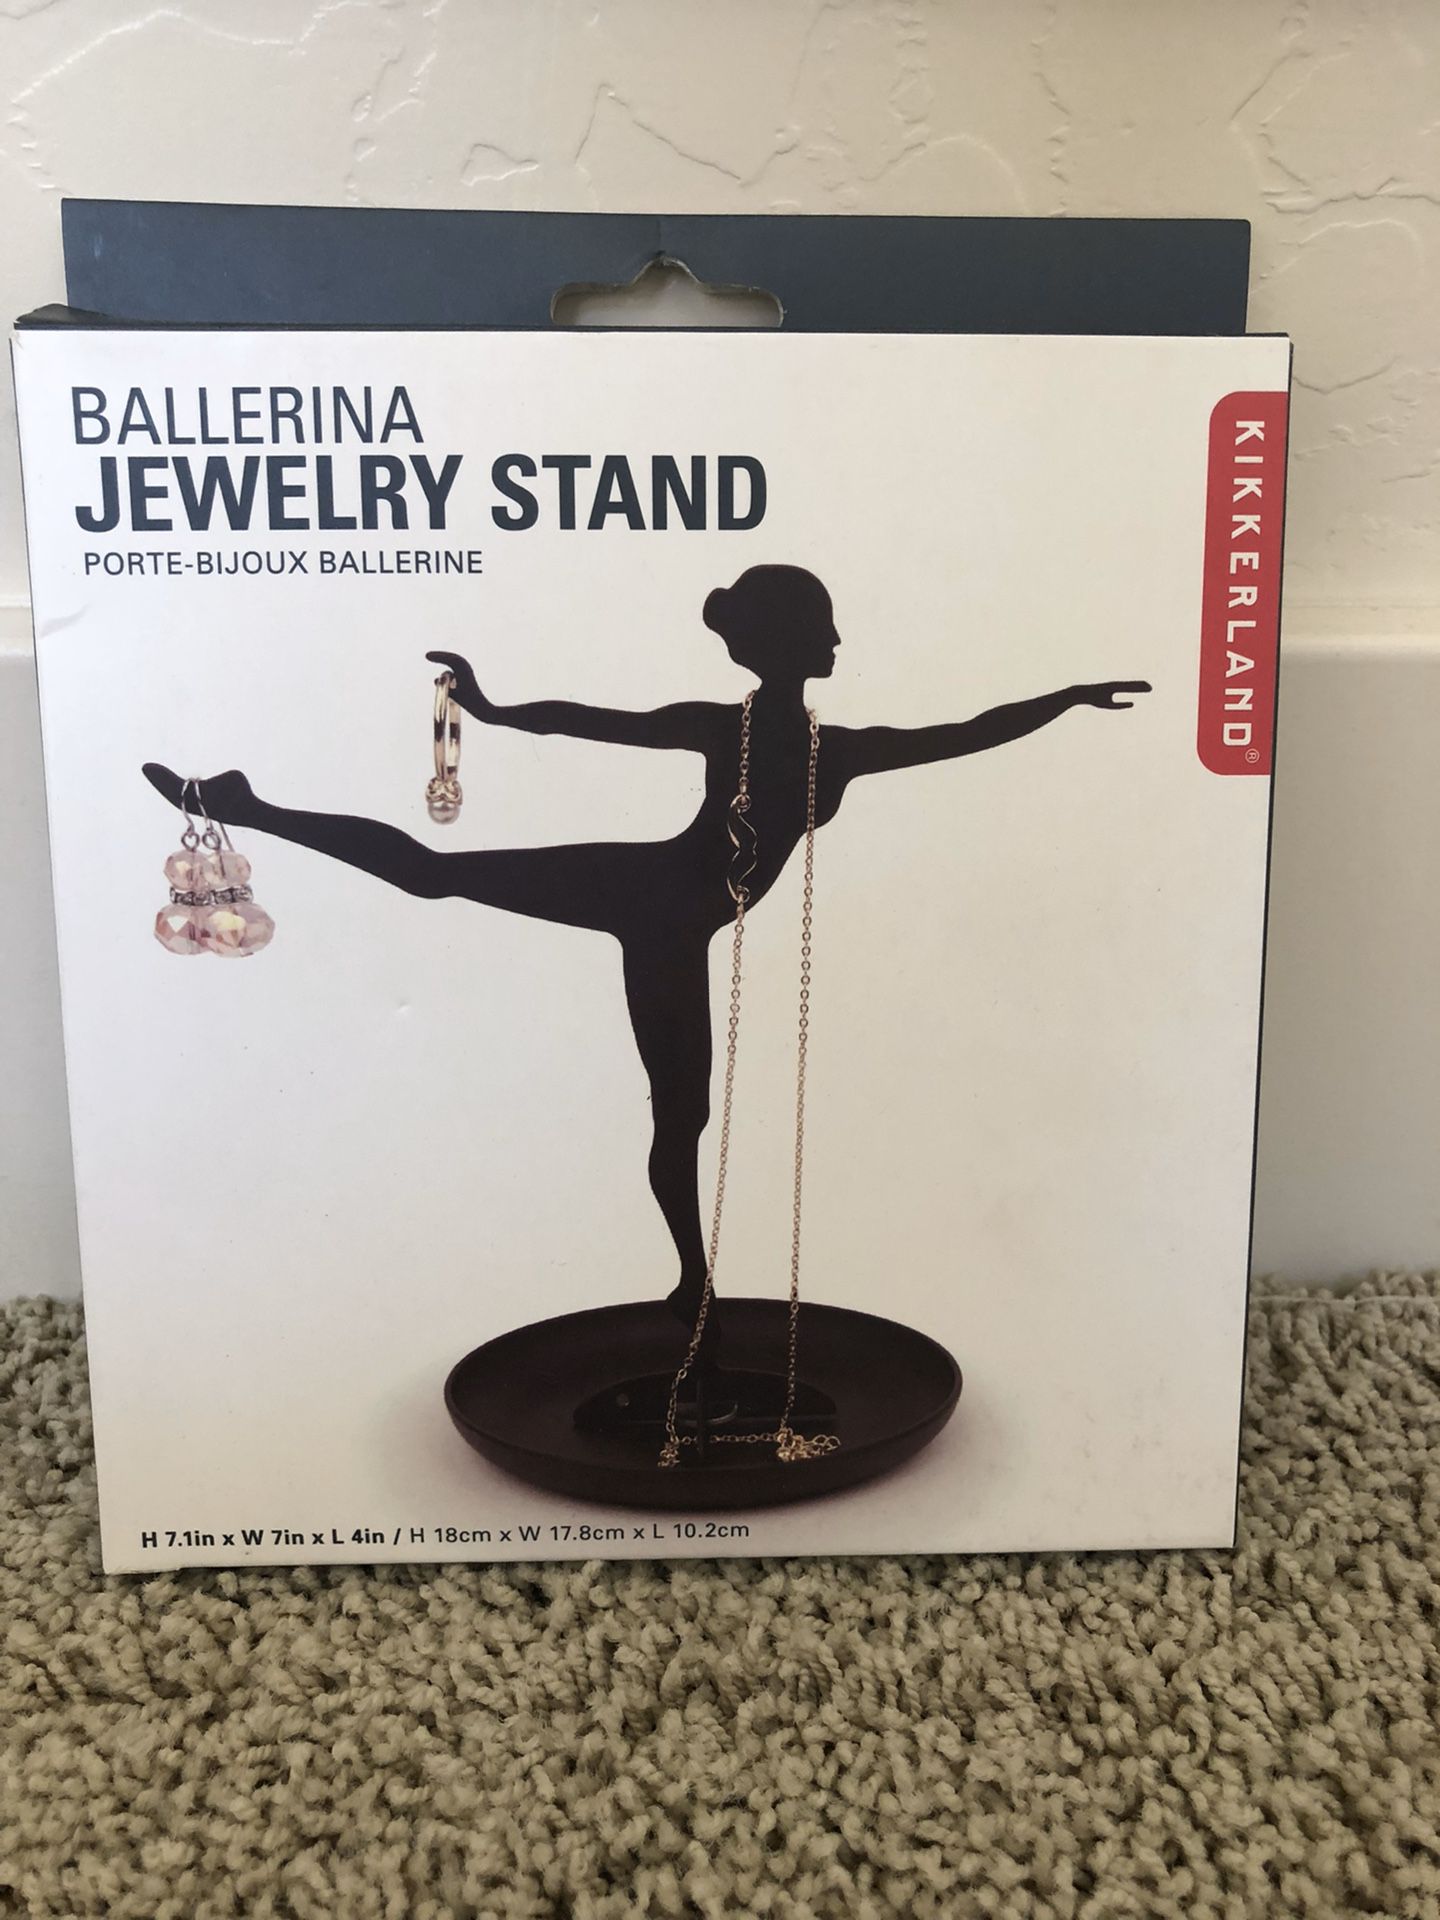 Kikkerland Ballerina Jewelry Stand